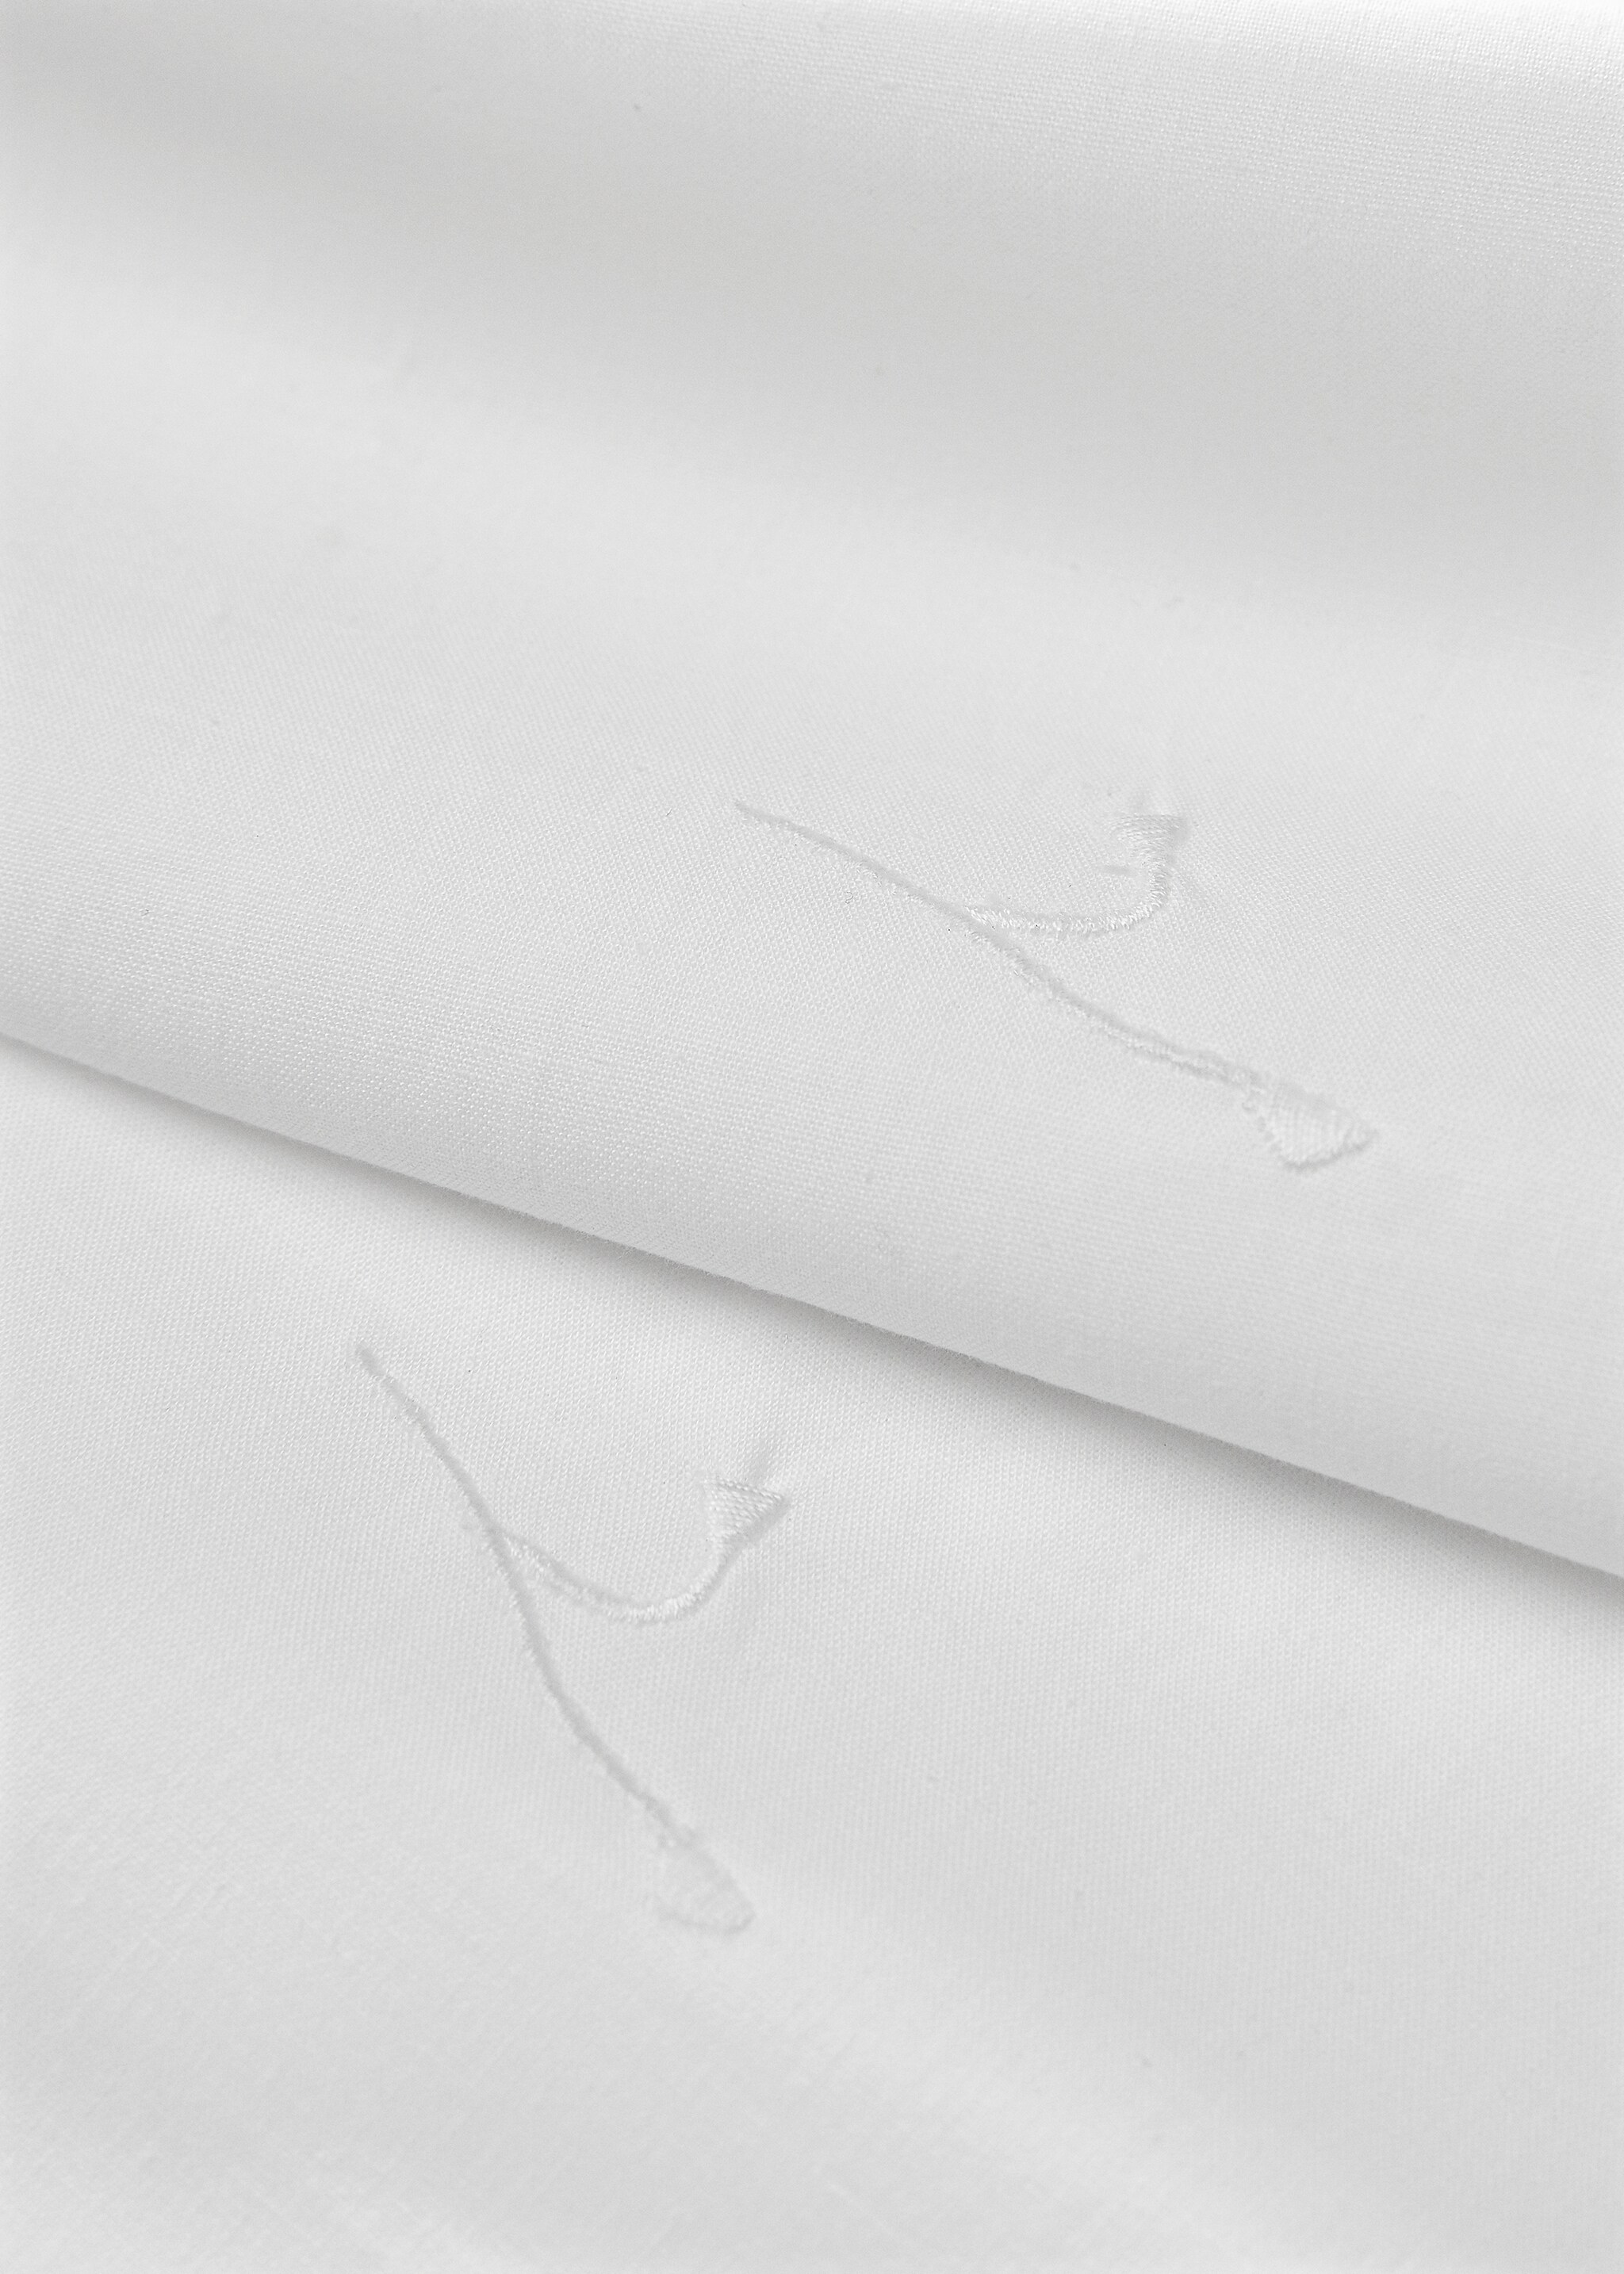 Funda de almohada algodón bordado floral 60x60cm - Detalle del artículo 3